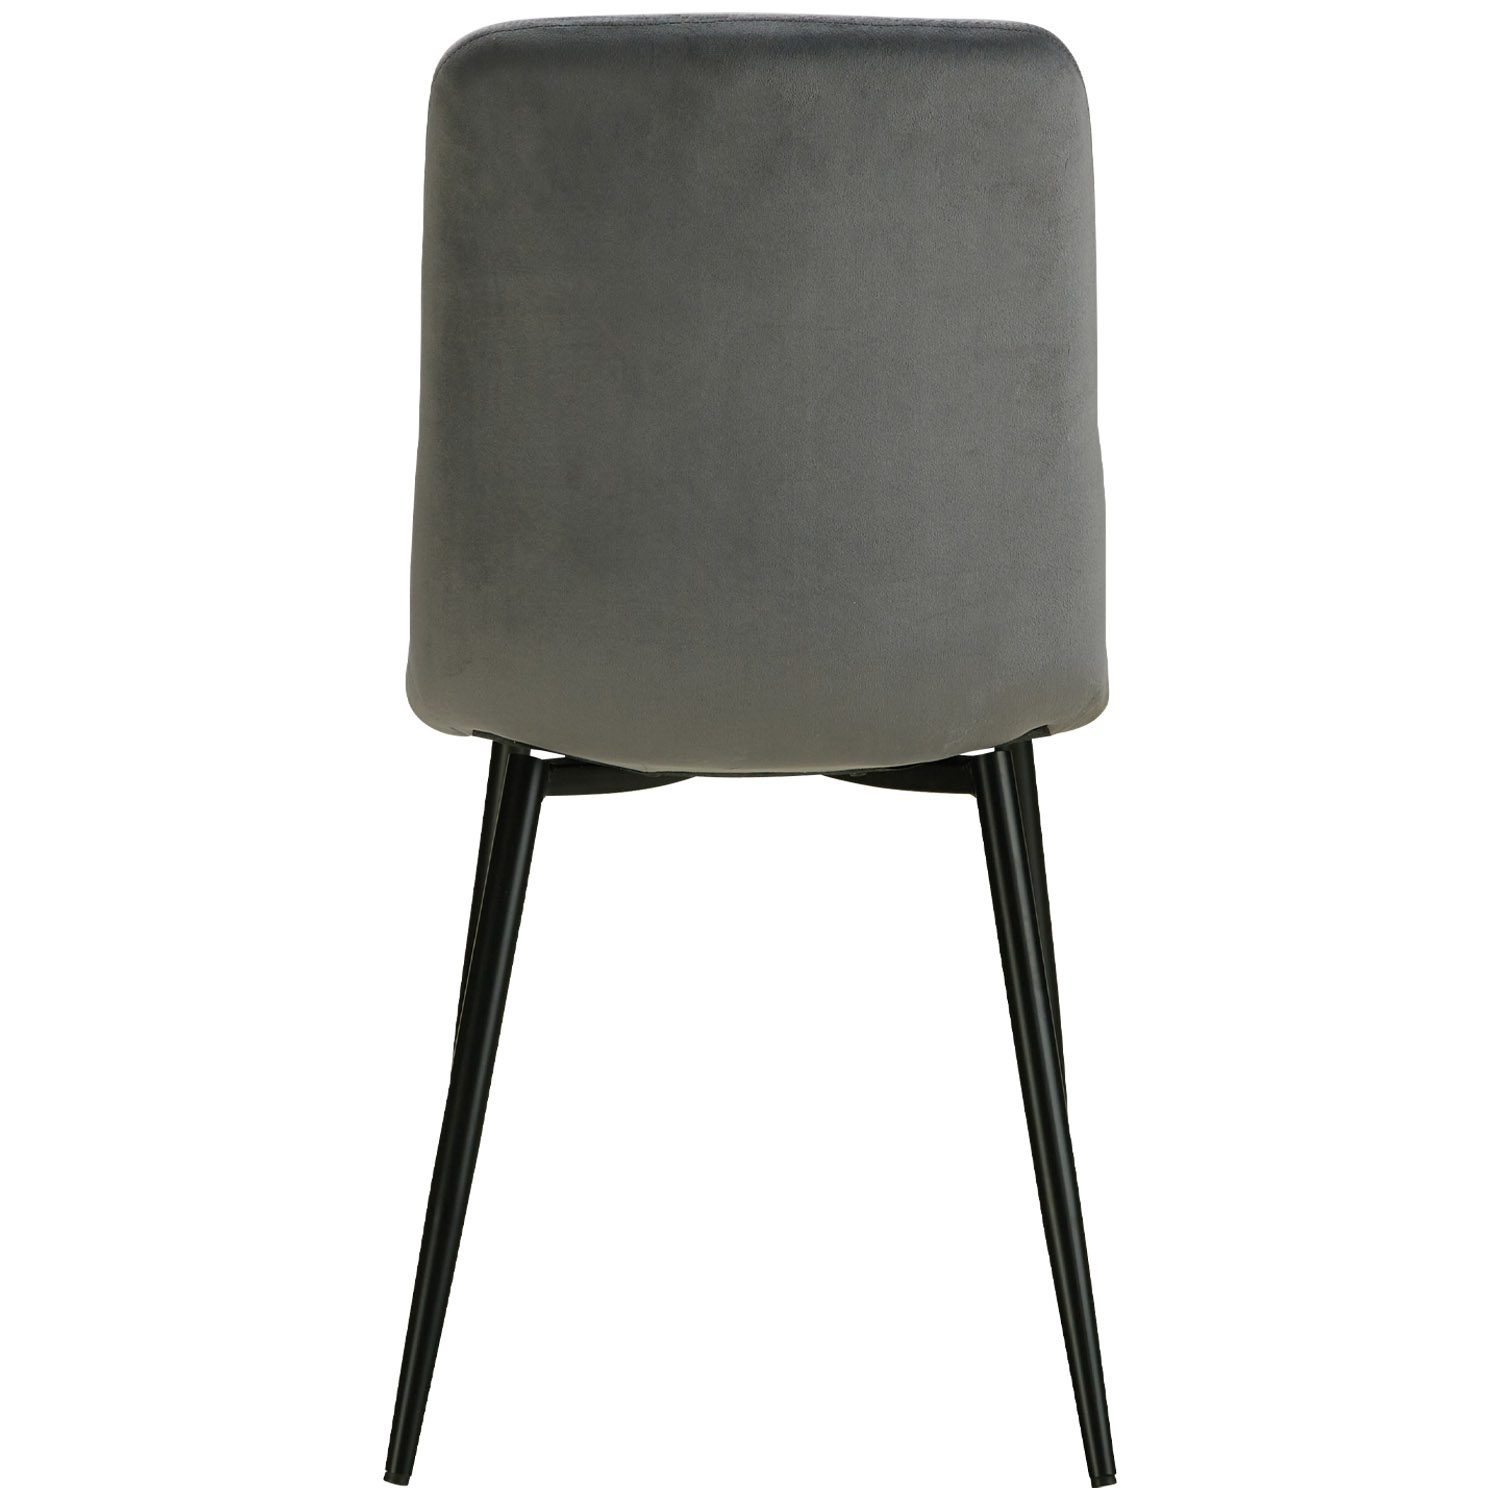 Esszimmerstuhl 1, 2, 4, 6 Stühle Grau Creme Samt Leinen Esstisch Stuhl Küchenstuhl Polsterstuhl Modern